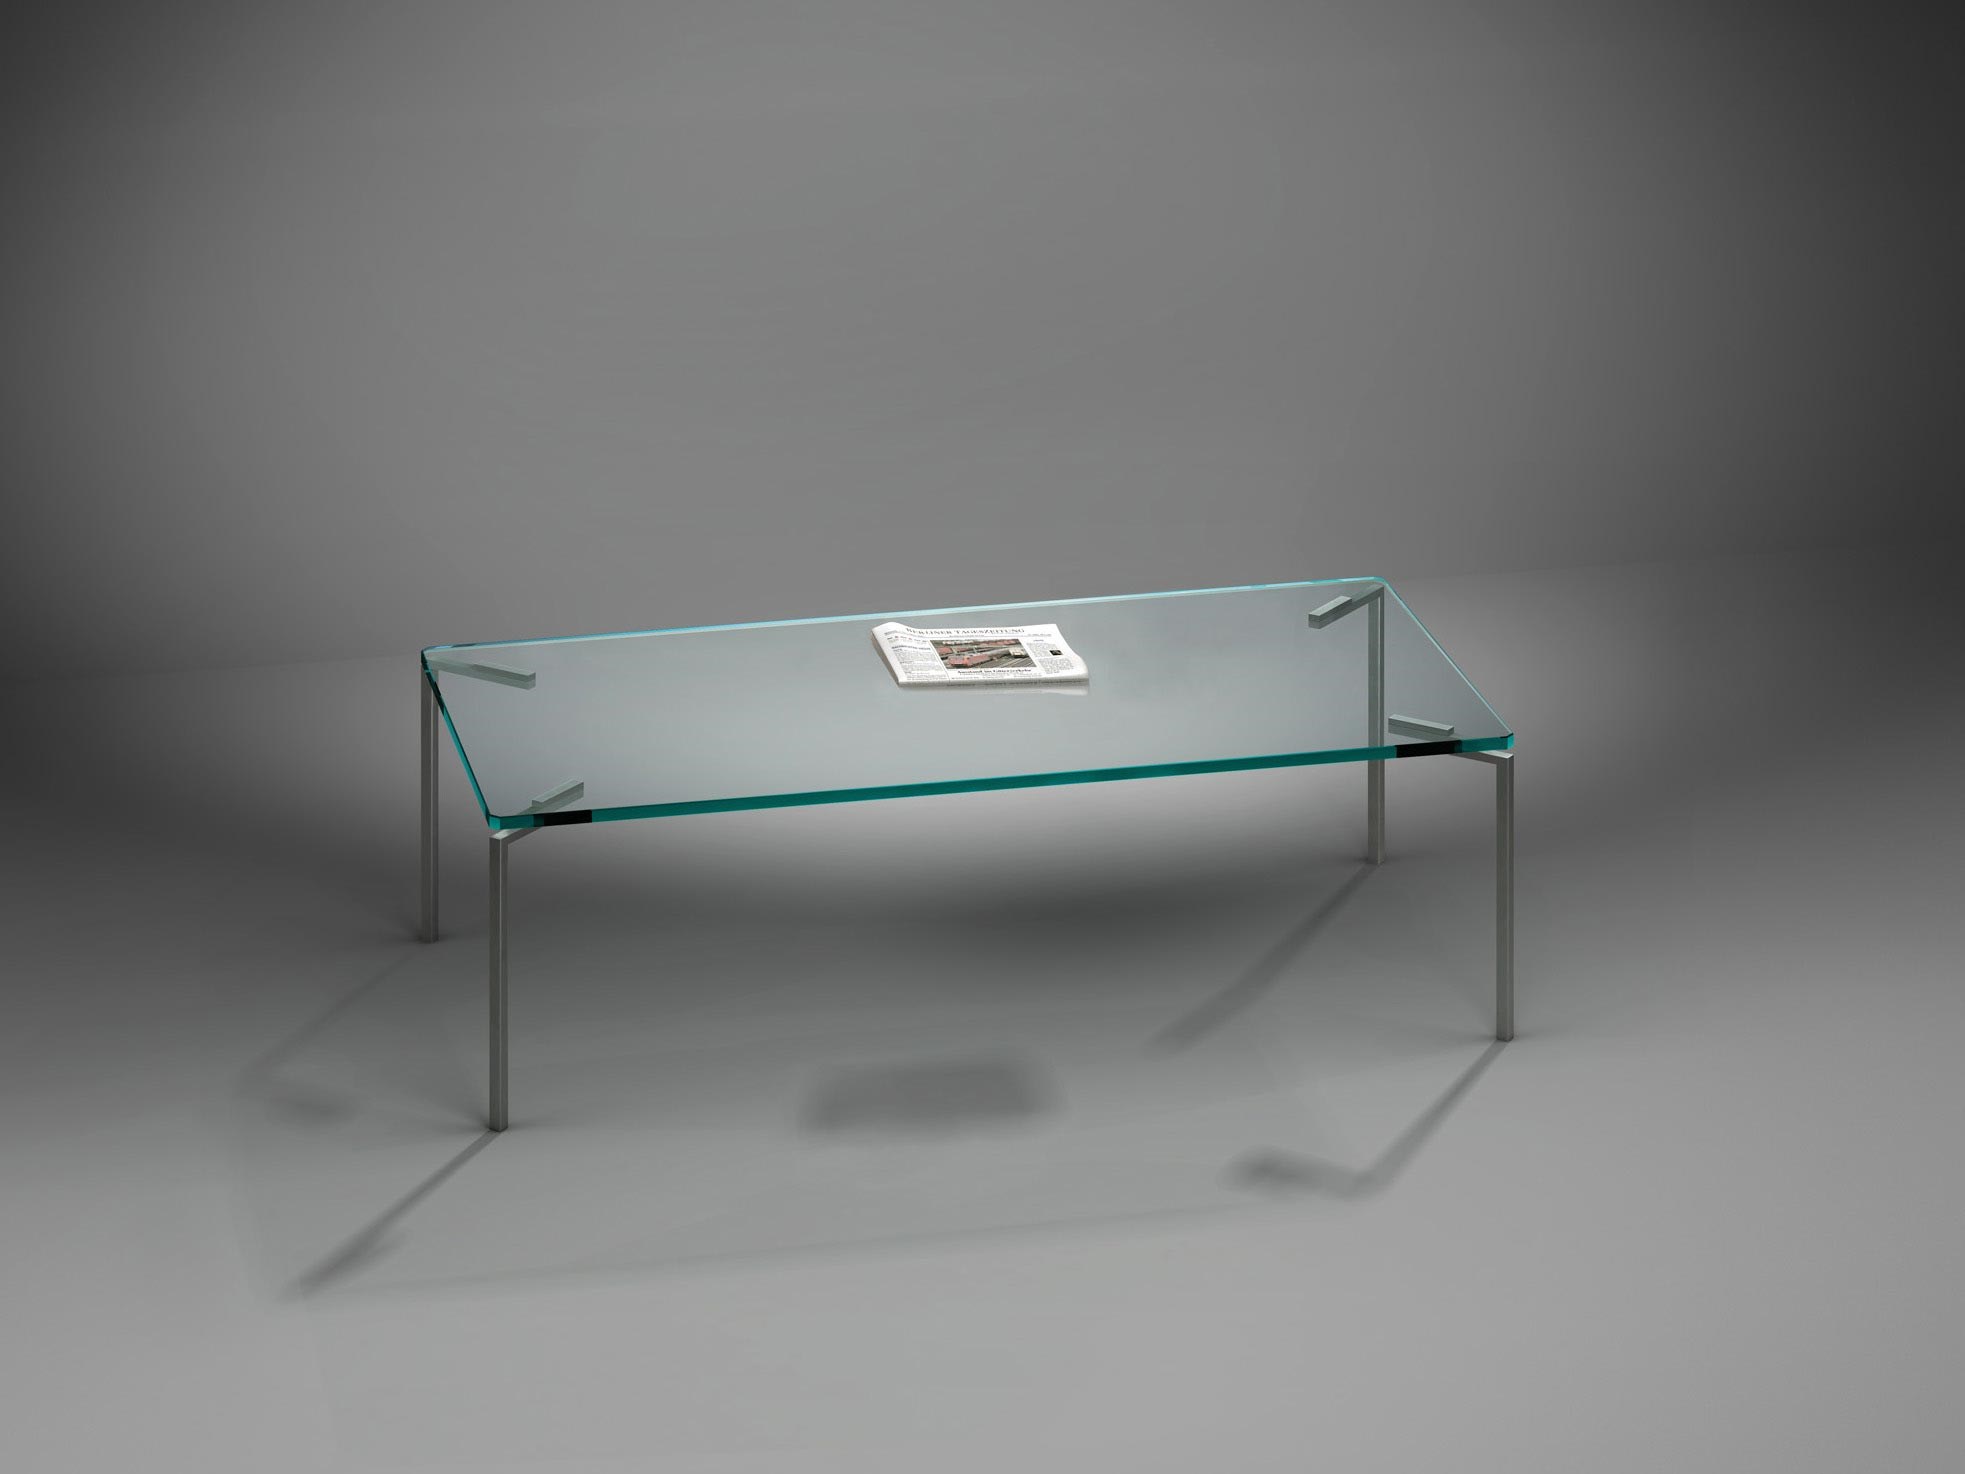 Glascouchtisch FILIO von DREIECK DESIGN: FI 2636 - OPTIWHITE klar - Tischfüße Edelstahl gebürstet